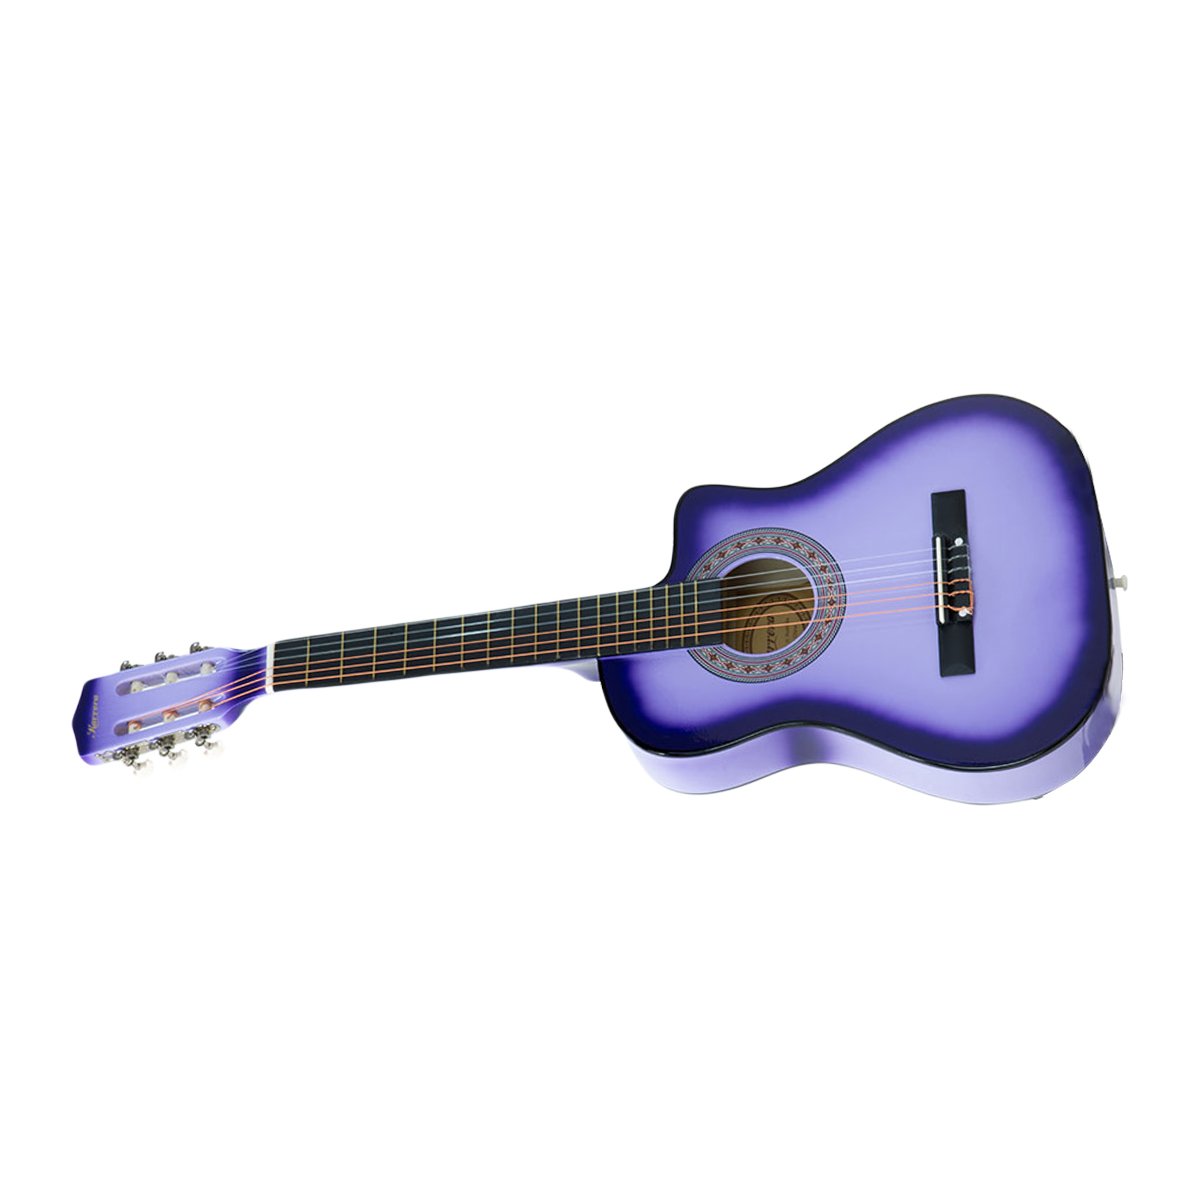 38in High-Gloss Cutaway Acoustic Guitar Set - Karrera